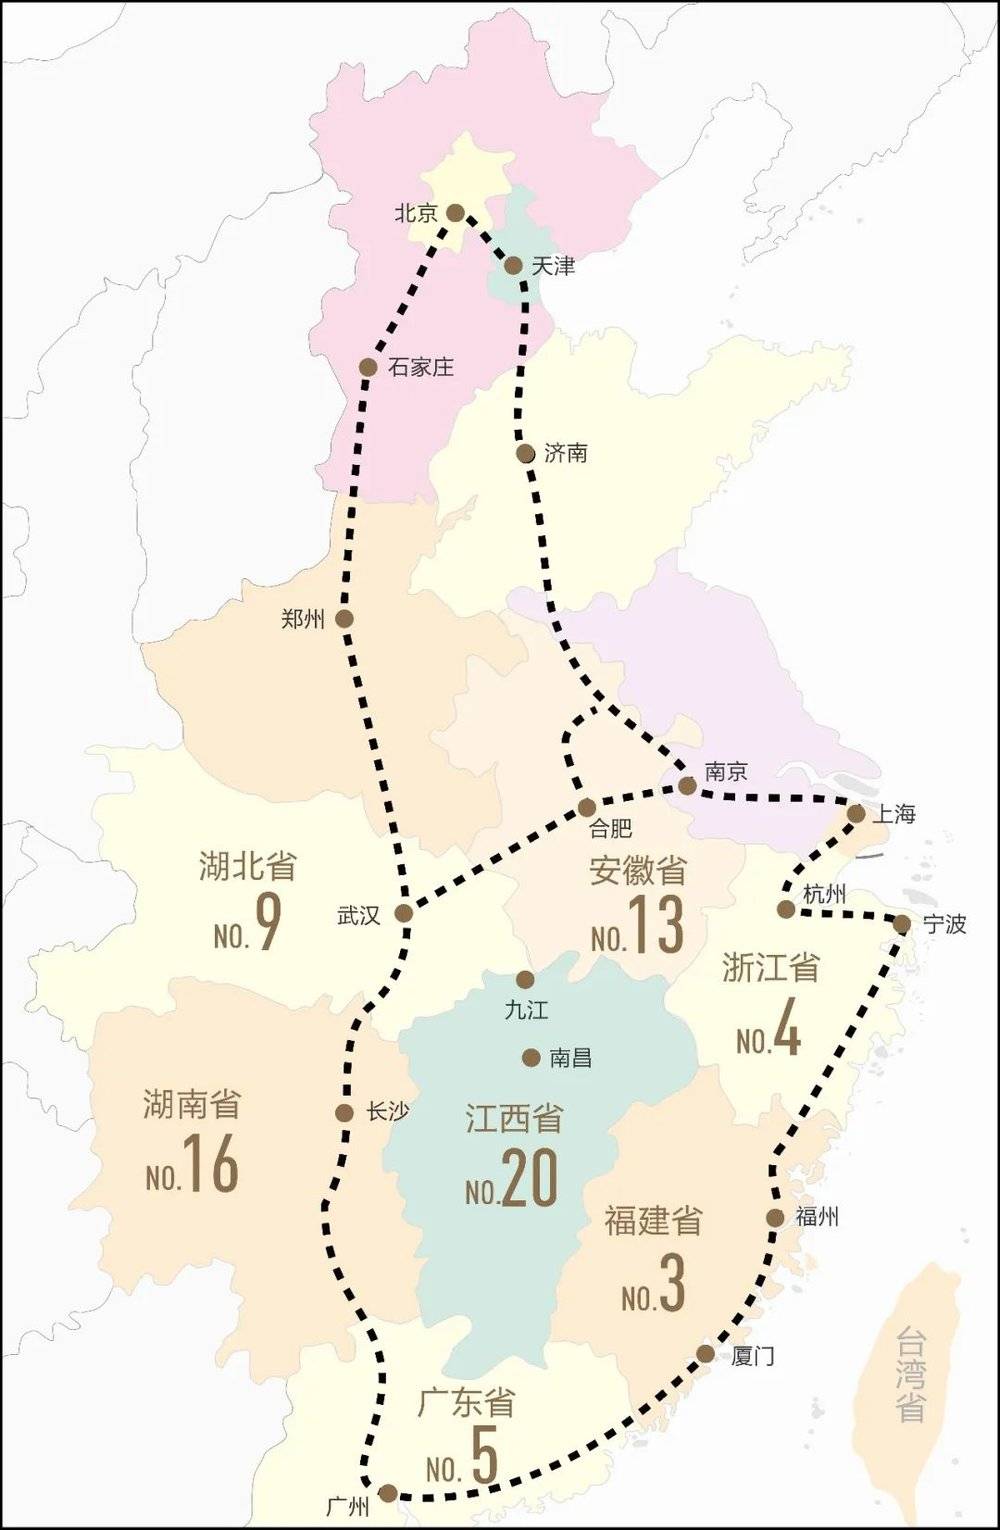 2020年人均GDP的全国排名和高铁网络规划时网络出现的“环江西高铁带”说法